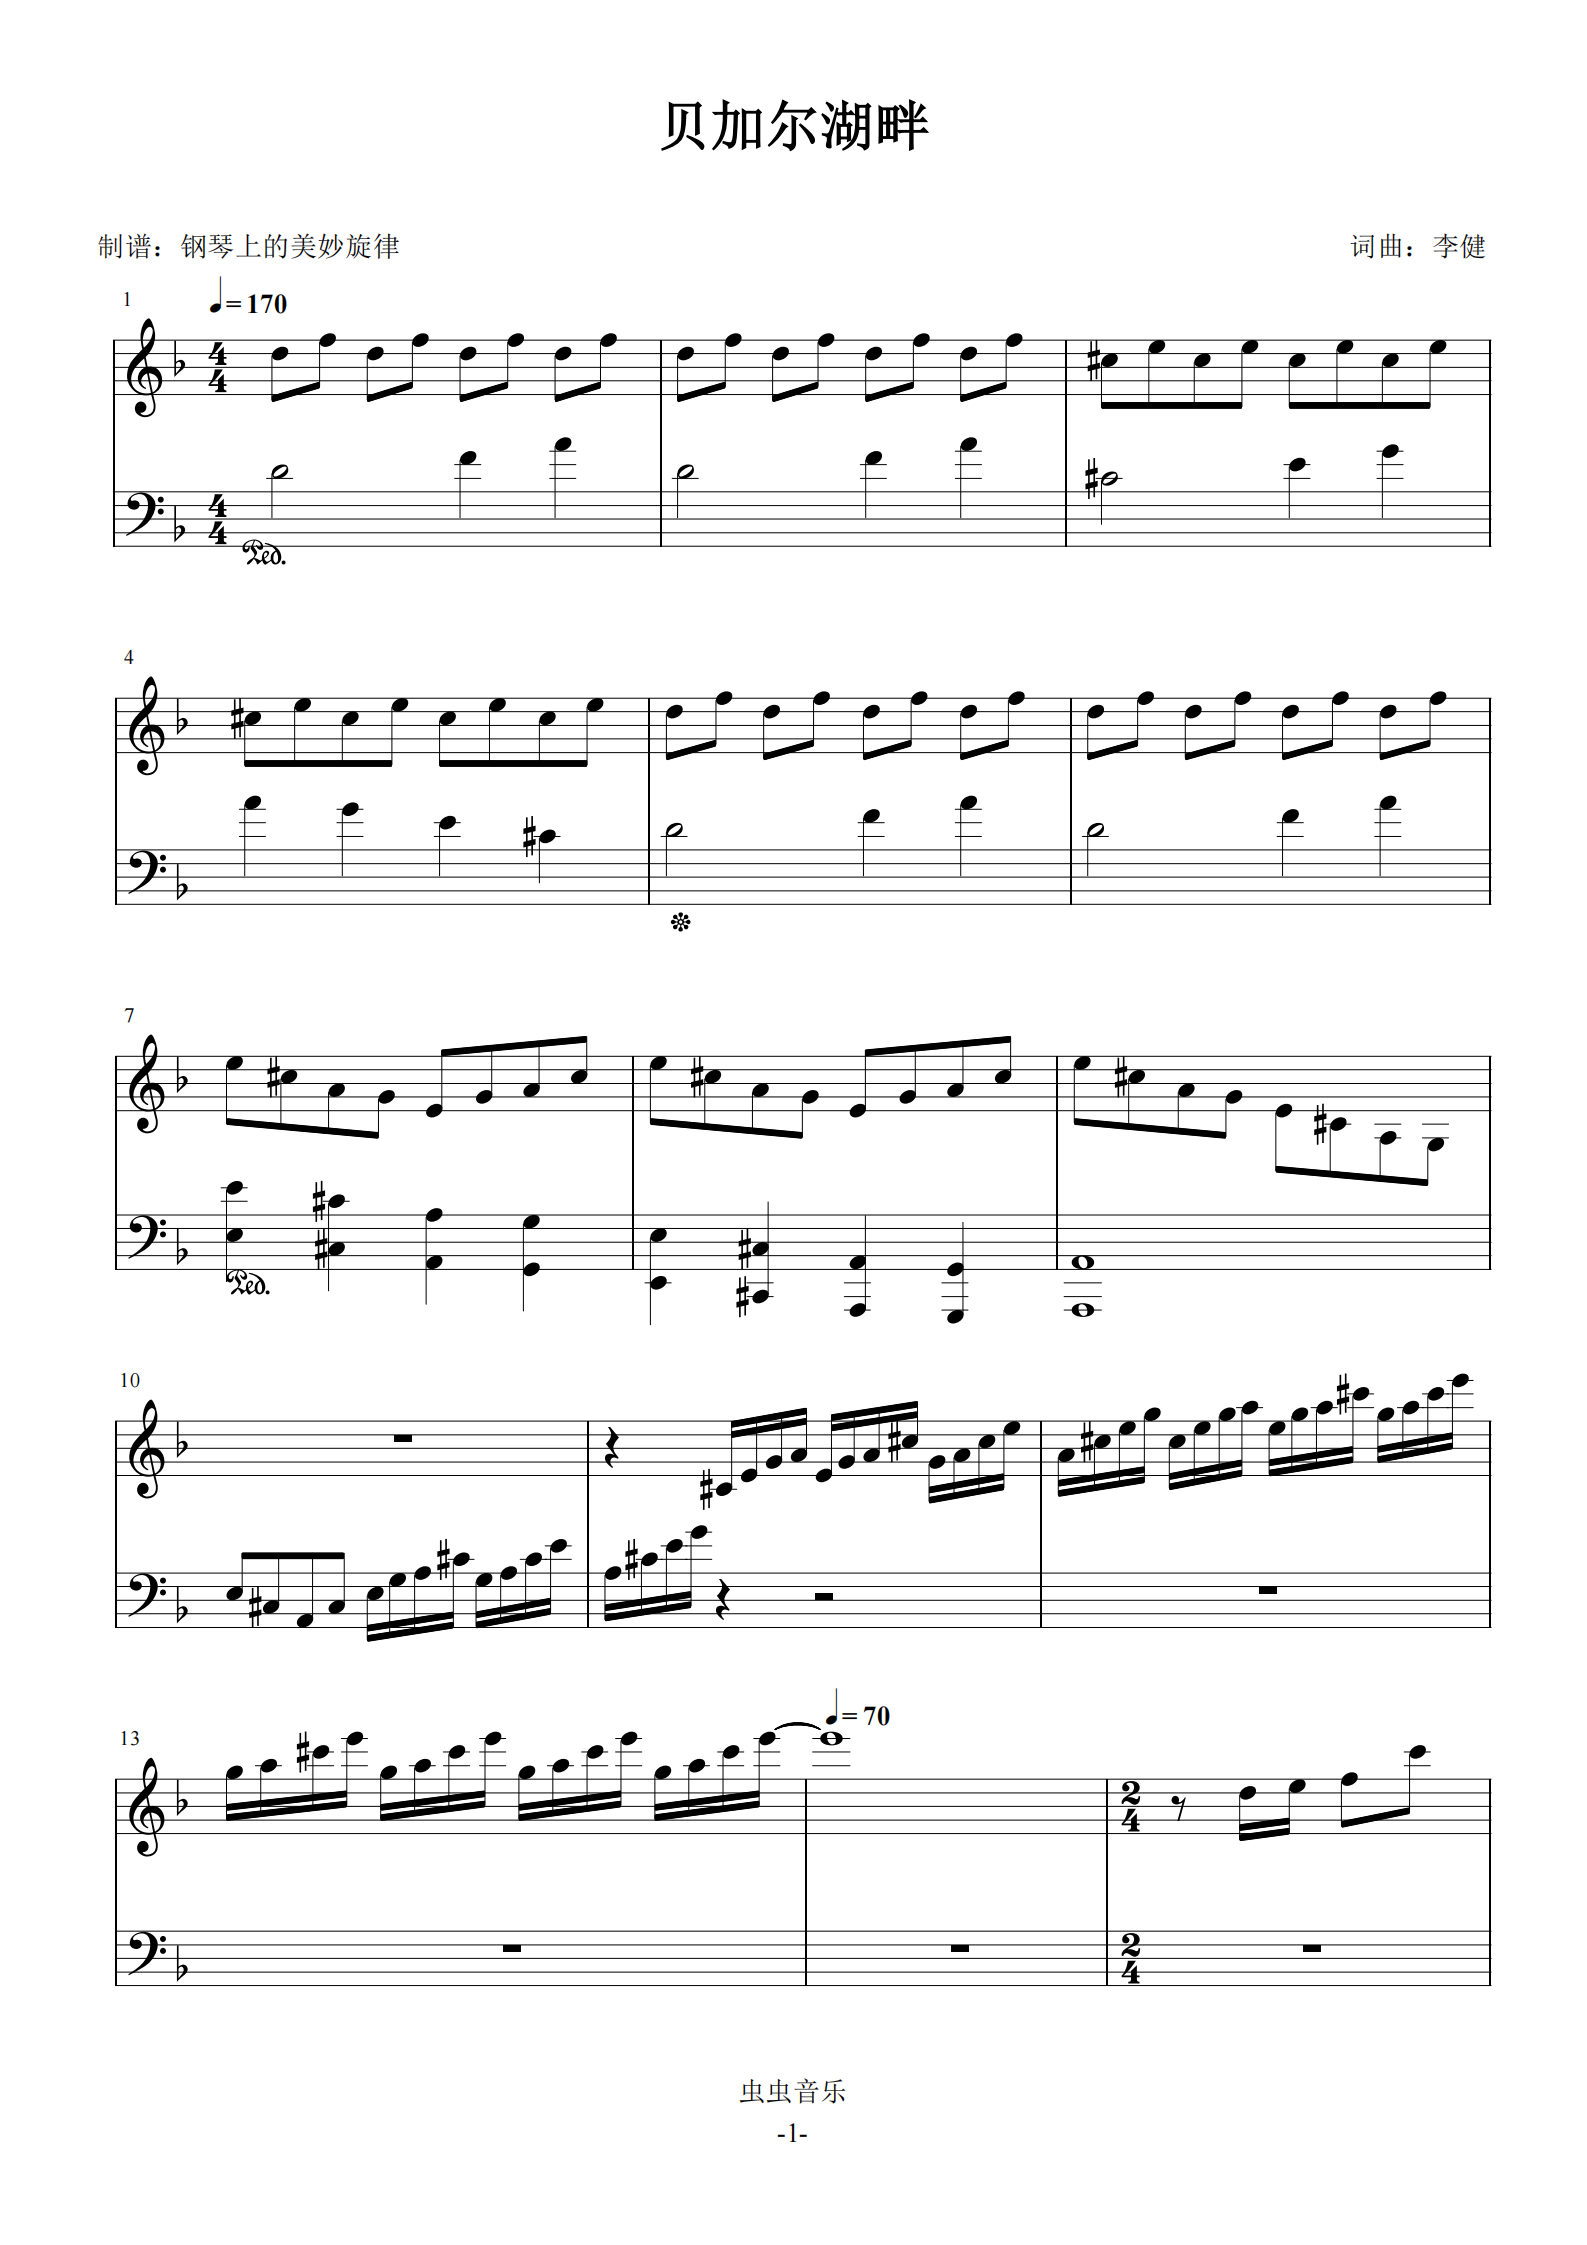 《贝加尔湖畔 钢琴曲,钢琴谱》李健（五线谱 钢琴曲 指法）-弹吧|蛐蛐钢琴网